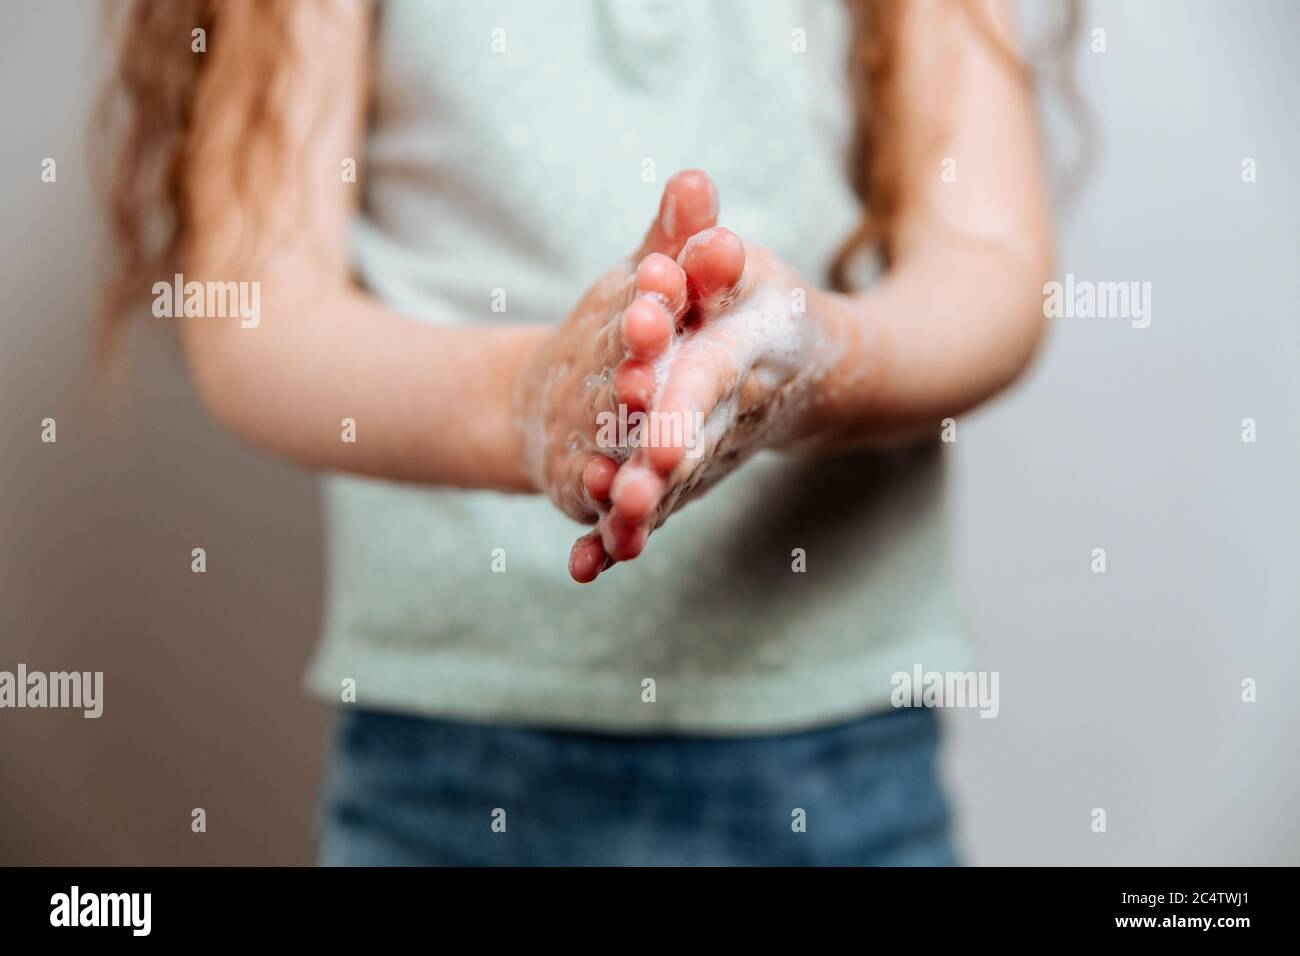 Mains d'enfants dans de la mousse savonneuse. Concept mains propres. Hygiène et santé.lavage des mains.alerte épidémique du coronavirus. Banque D'Images